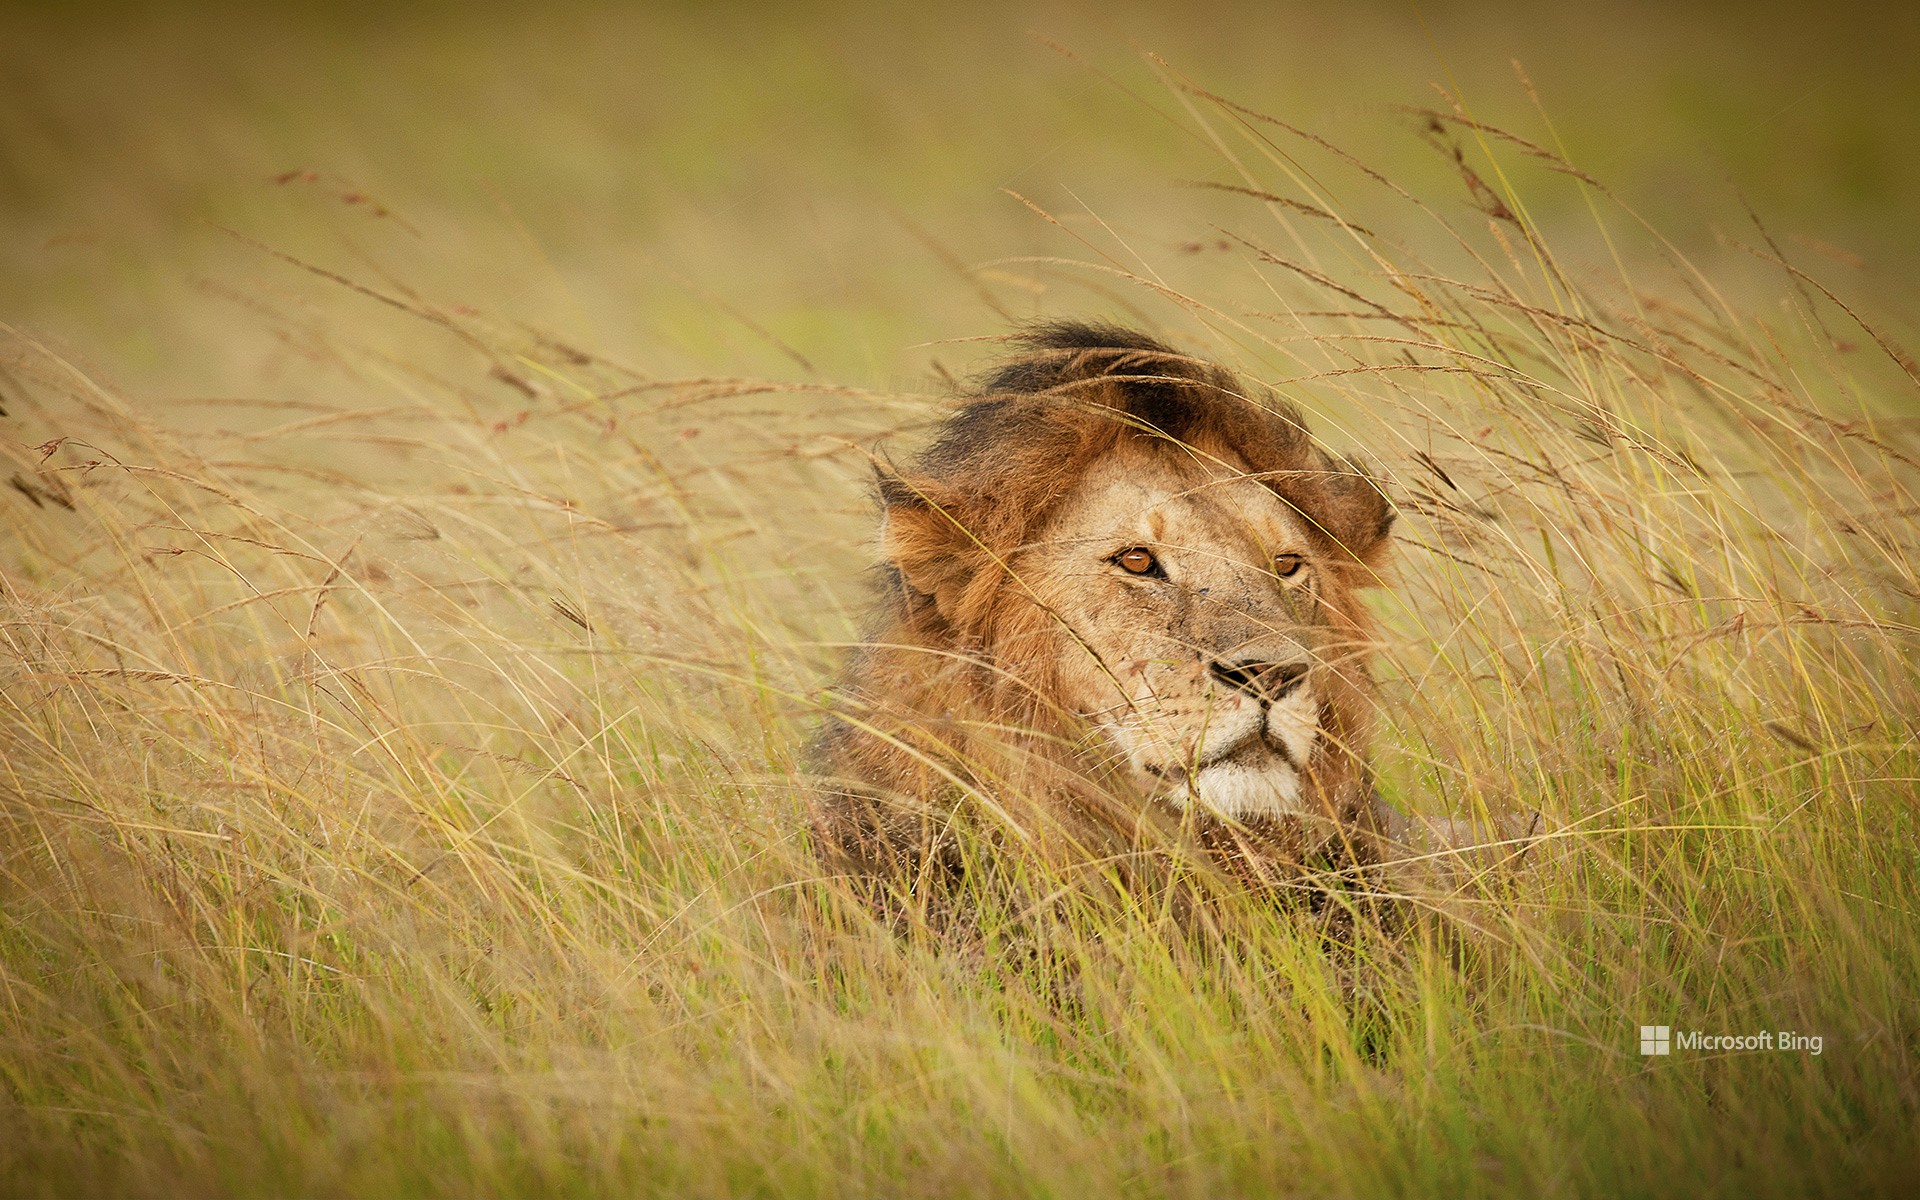 A lion in Maasai Mara, Kenya